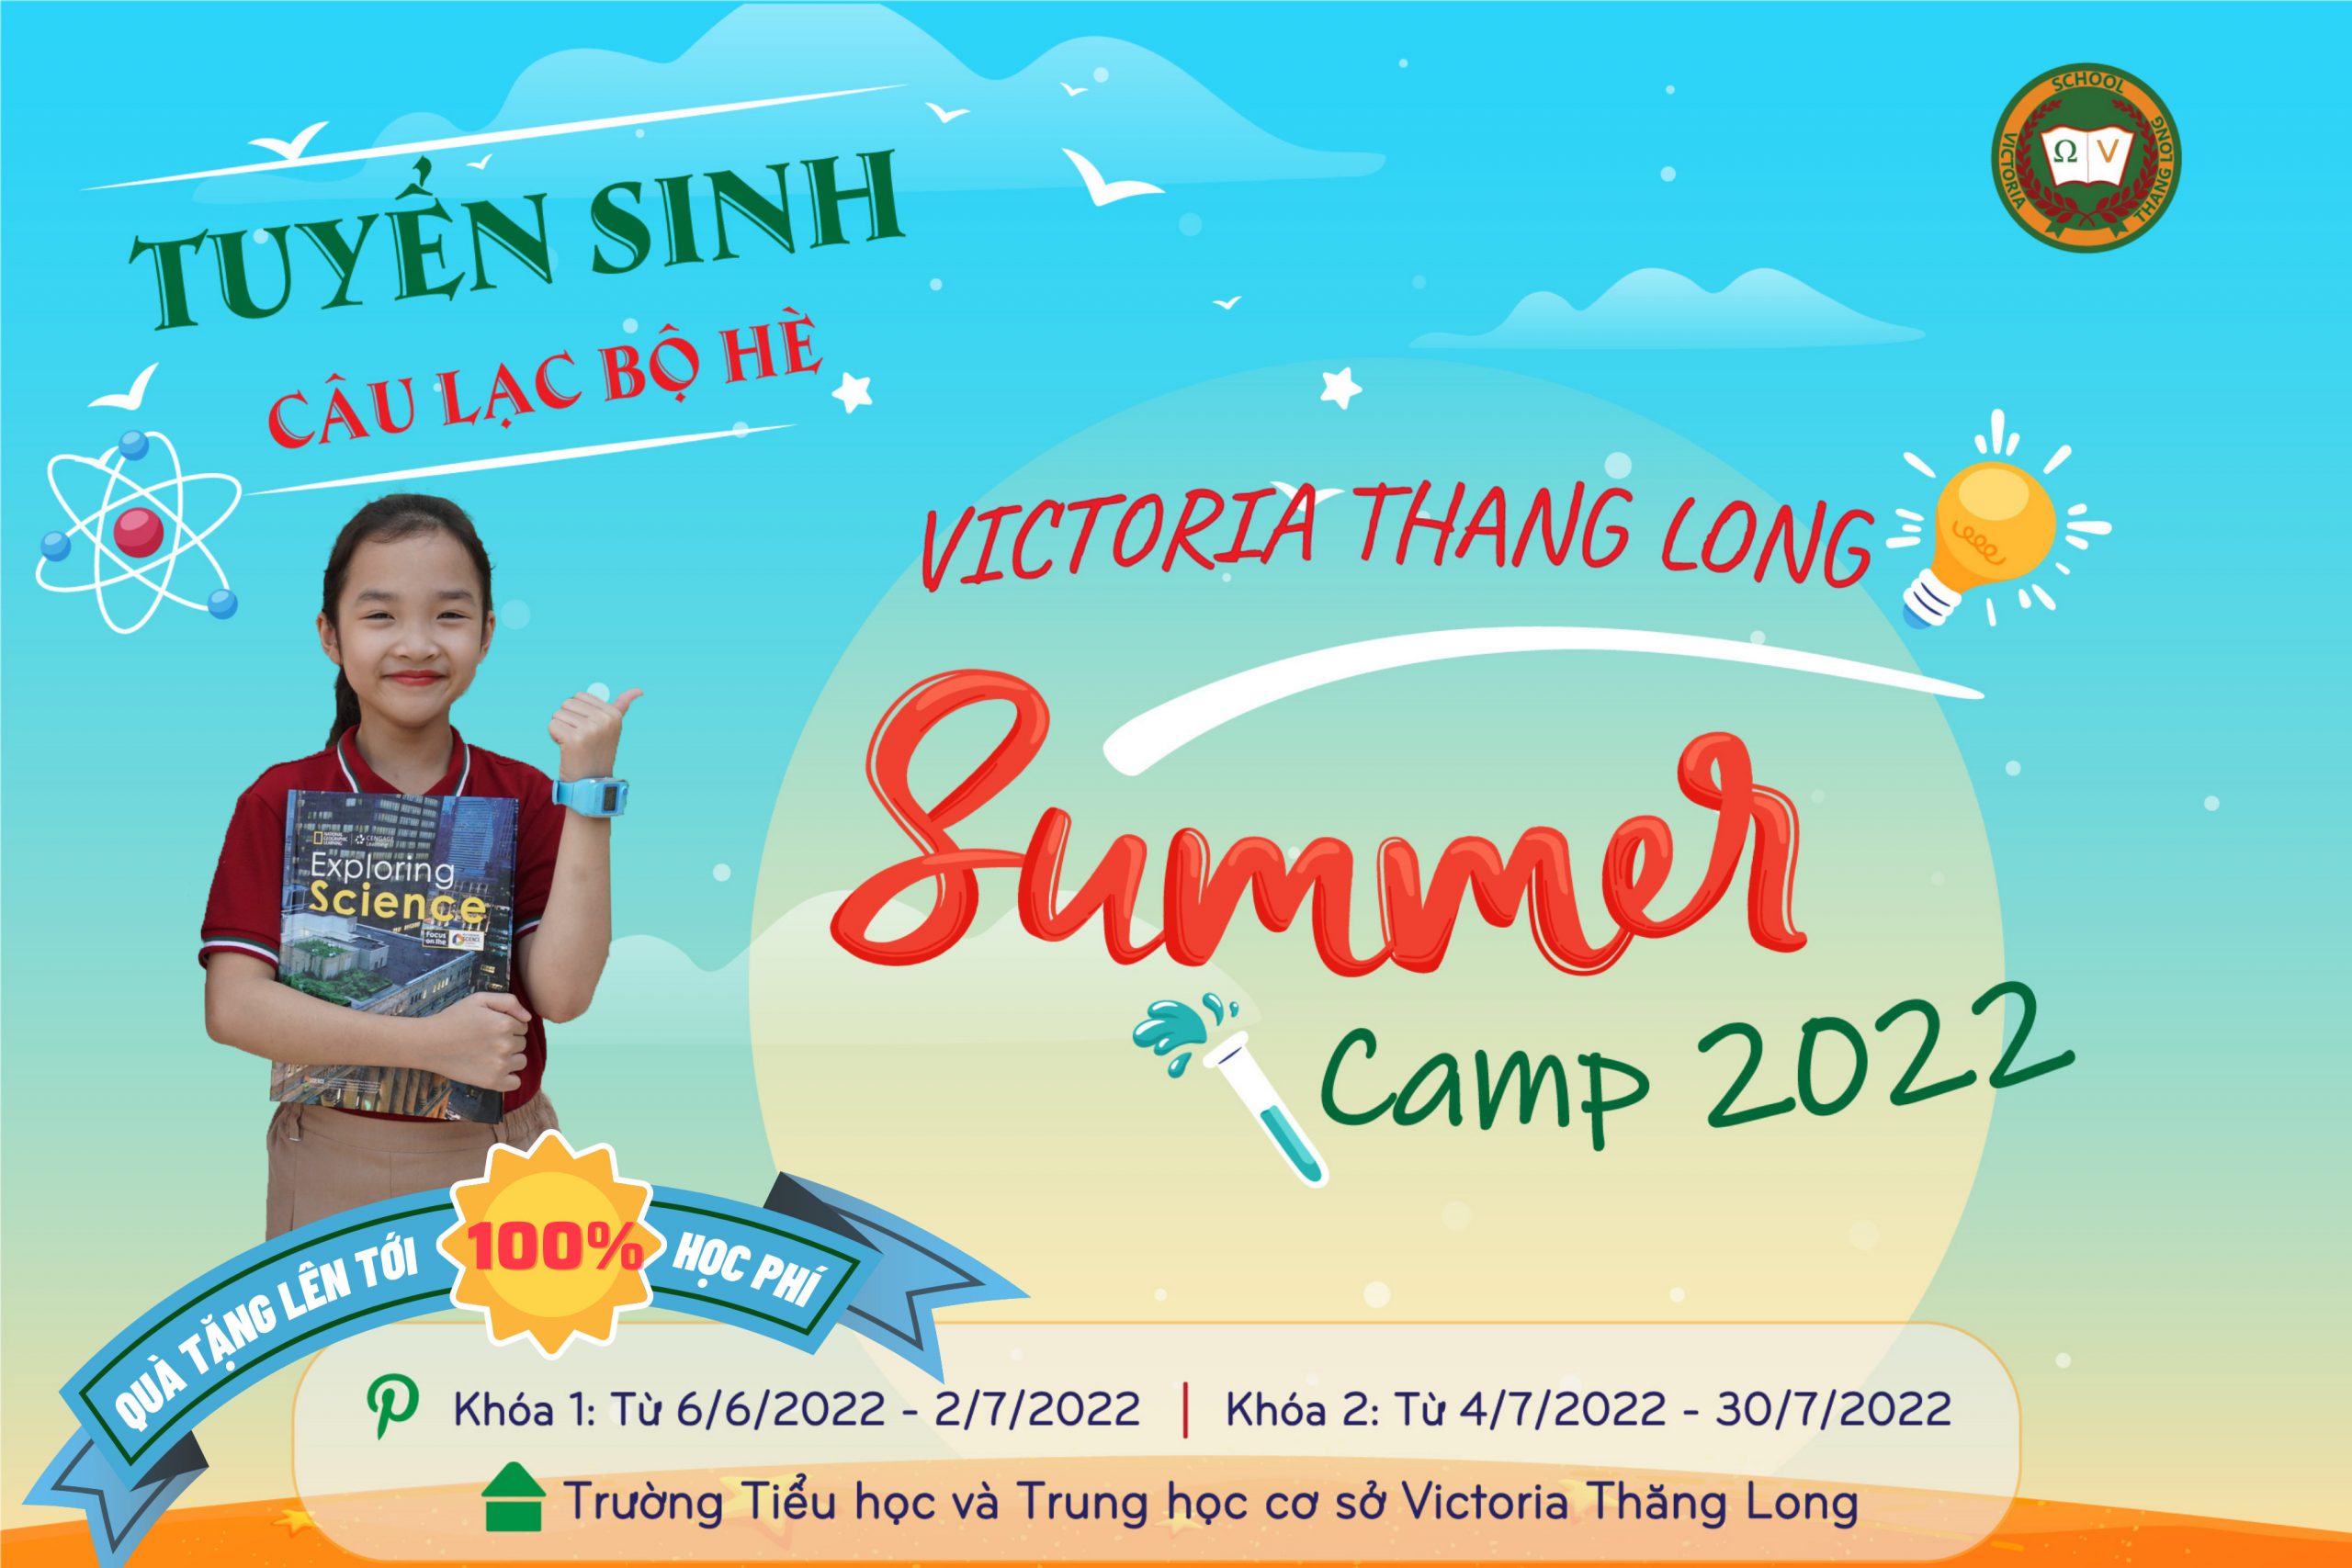 THÔNG BÁO TUYỂN SINH CÂU LẠC BỘ HÈ VICTORIA THANG LONG SUMMER CAMP 2022